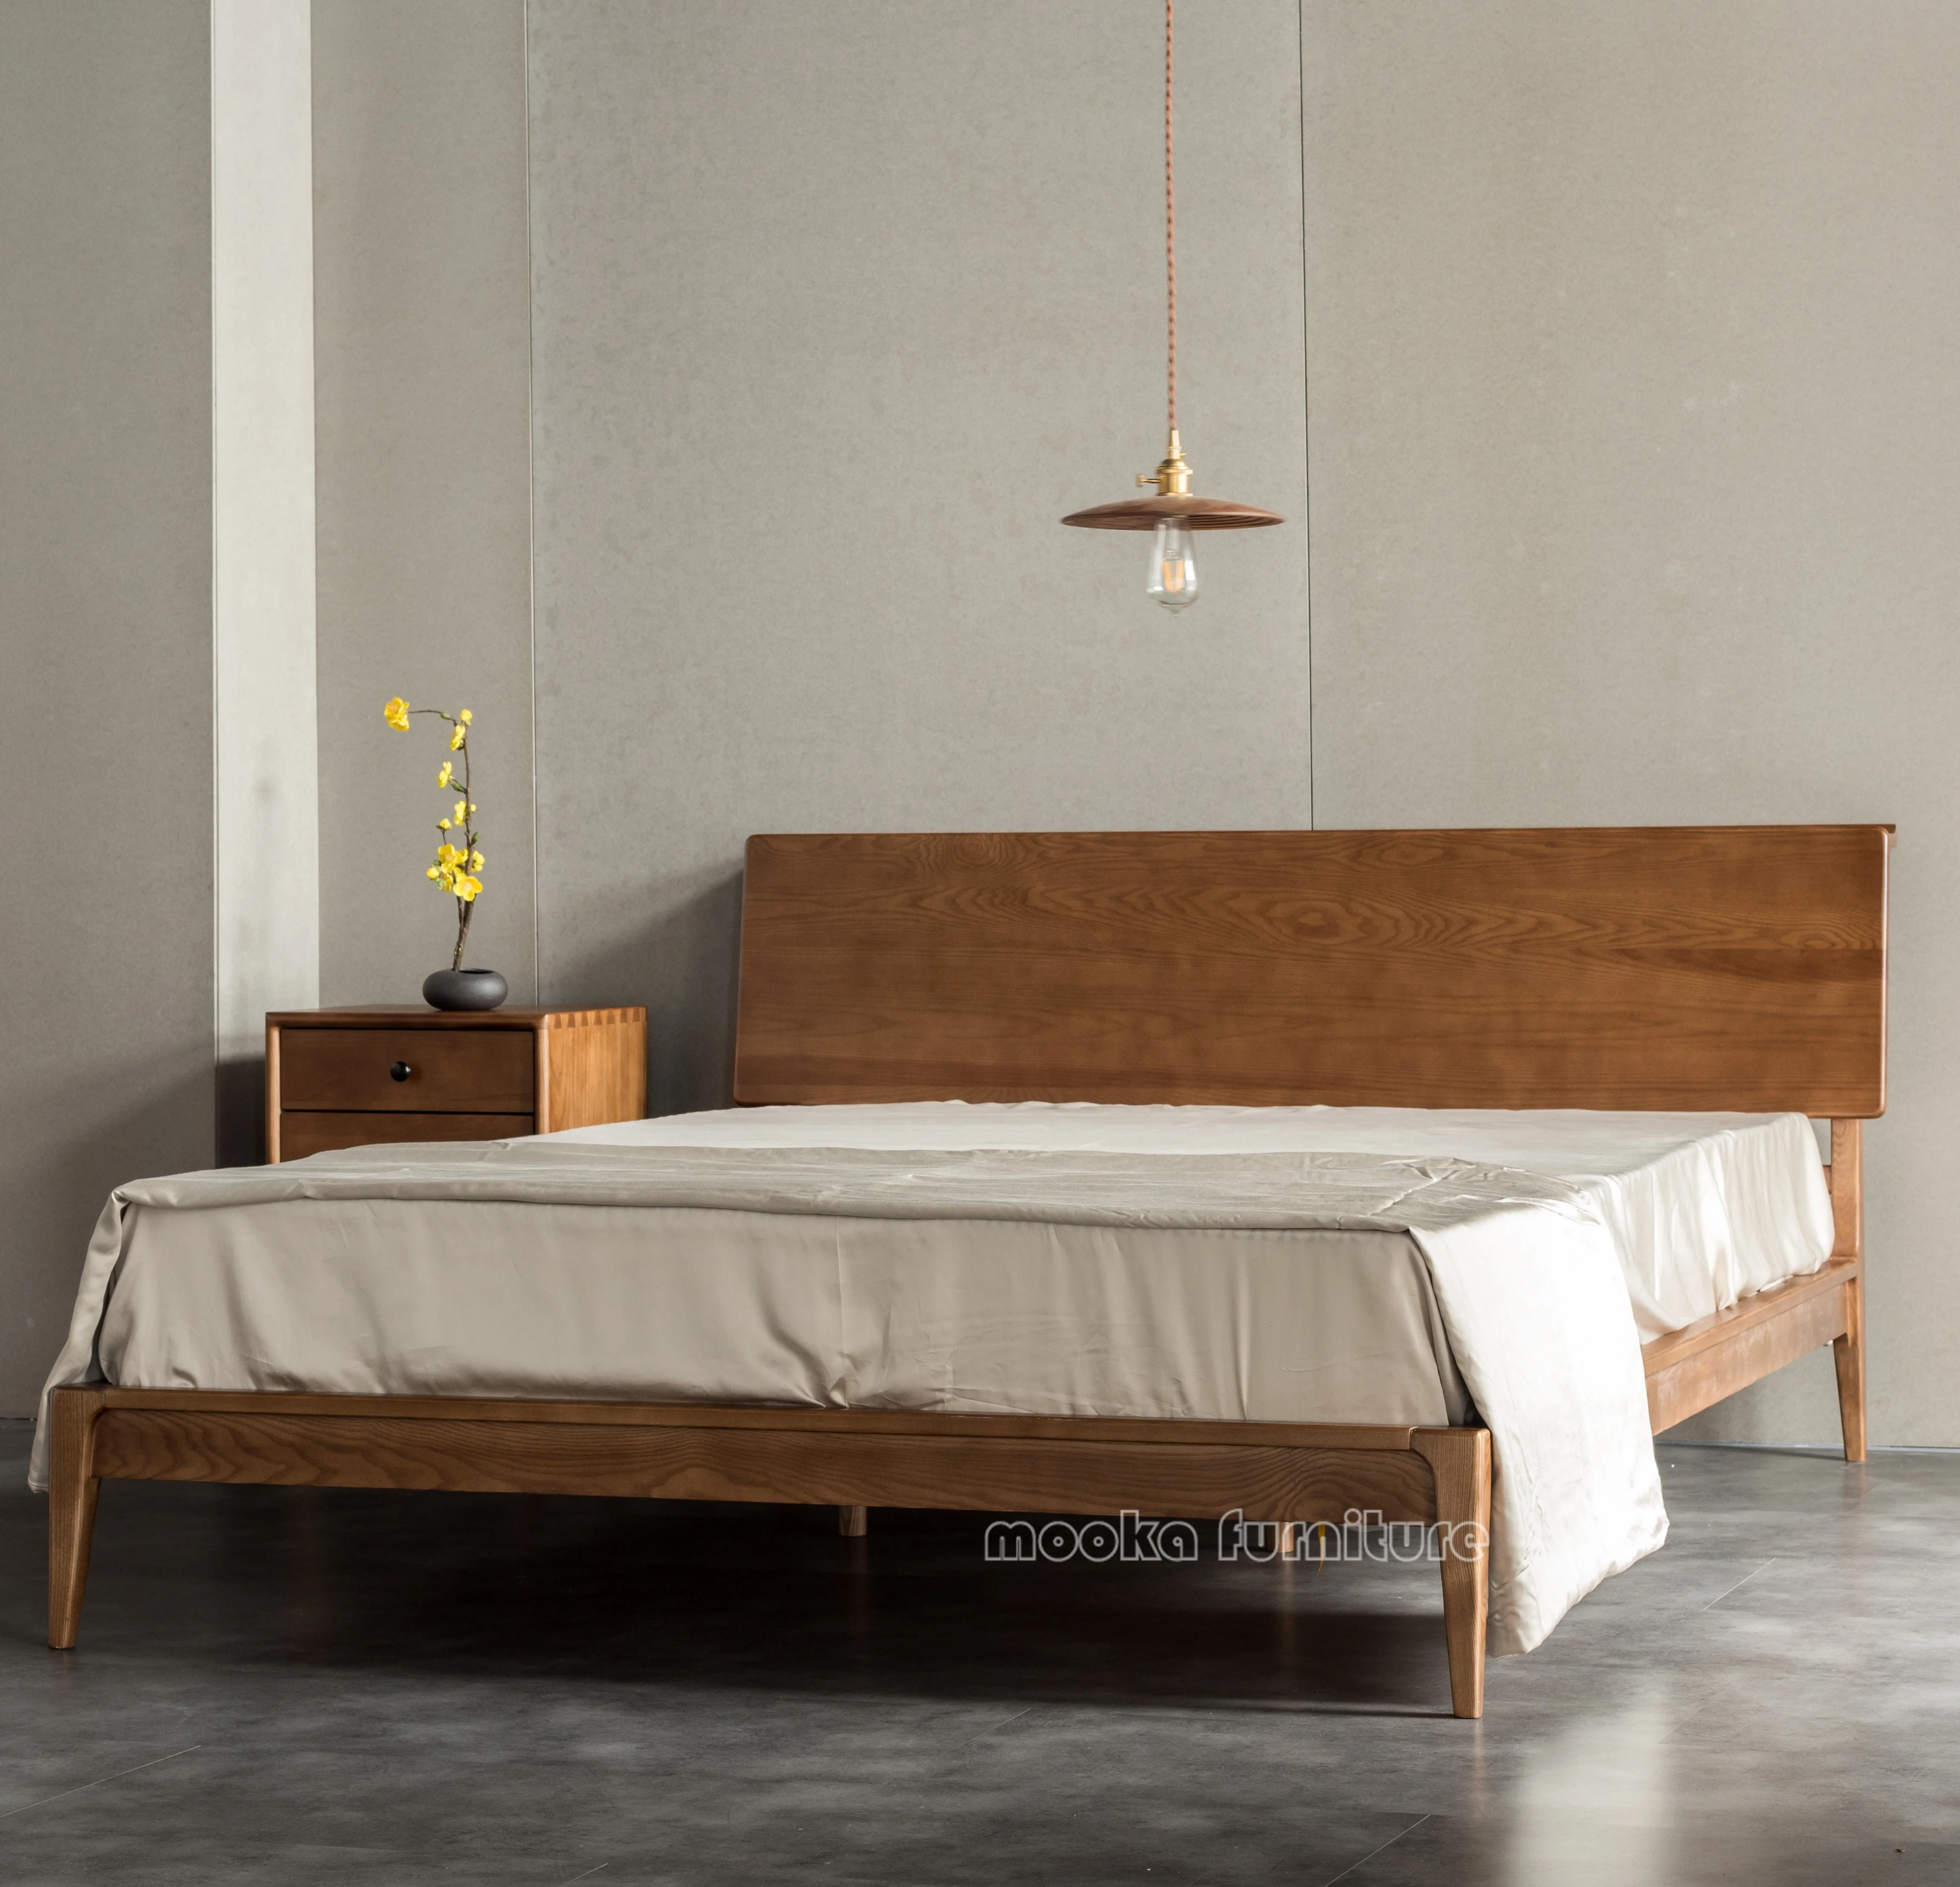 Wholesale الحديثة تصميم خشب متين السرير خشبي مع مجلس حافة سرير ملكي مجموعة أثاث غرف النوم m.alibaba.com